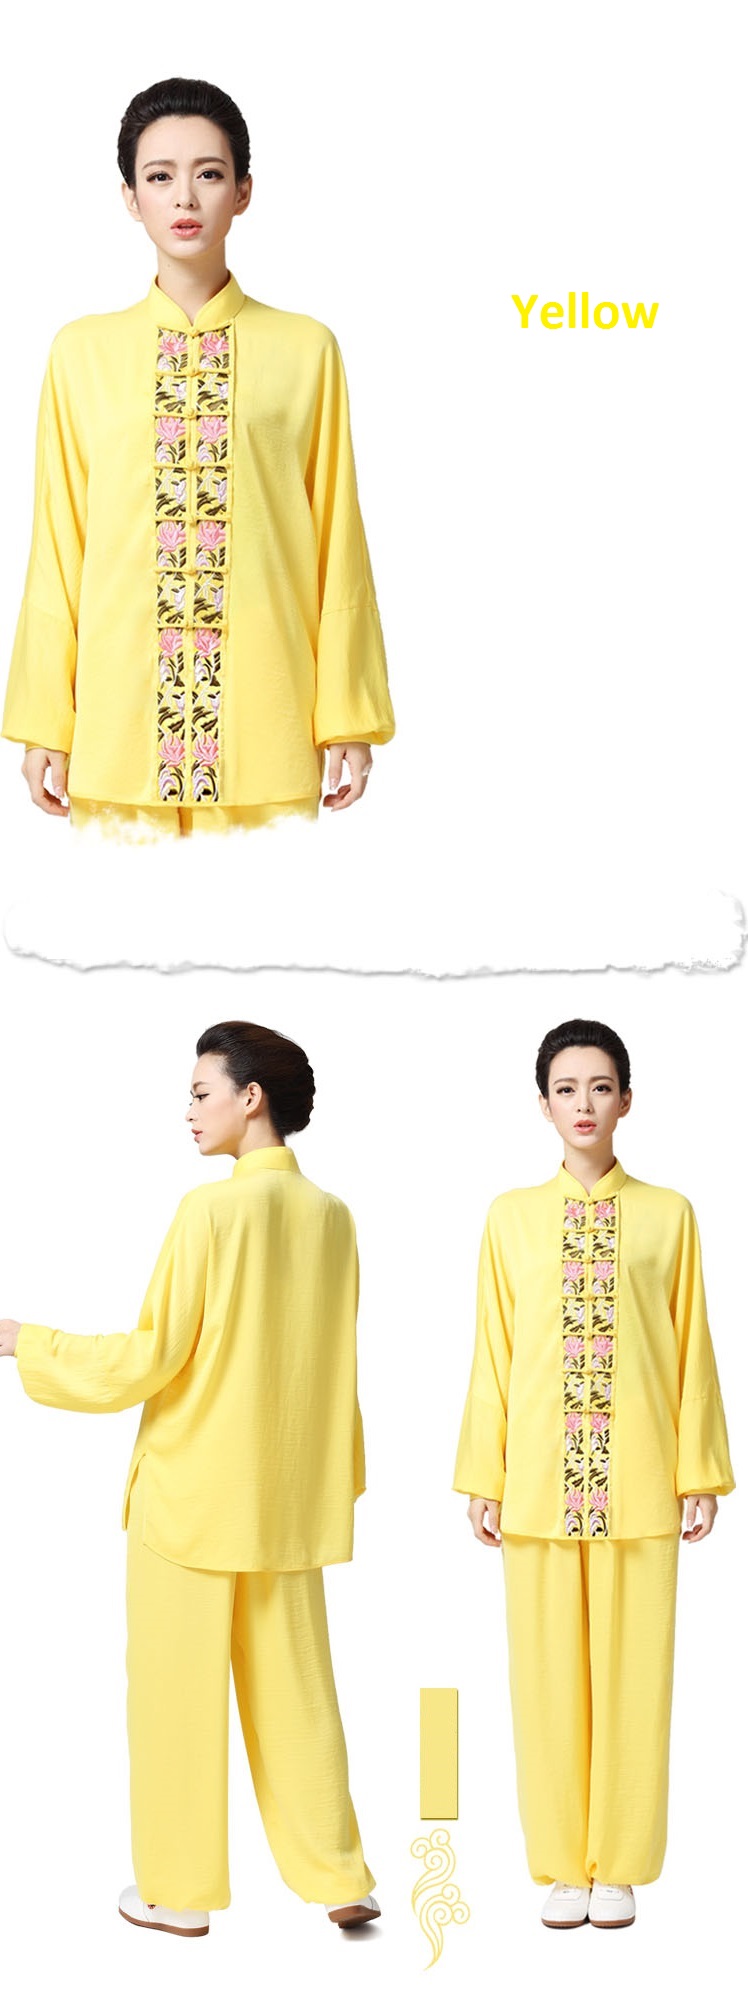  Tai Chi Clothing women long-sleeved Yellow uniform